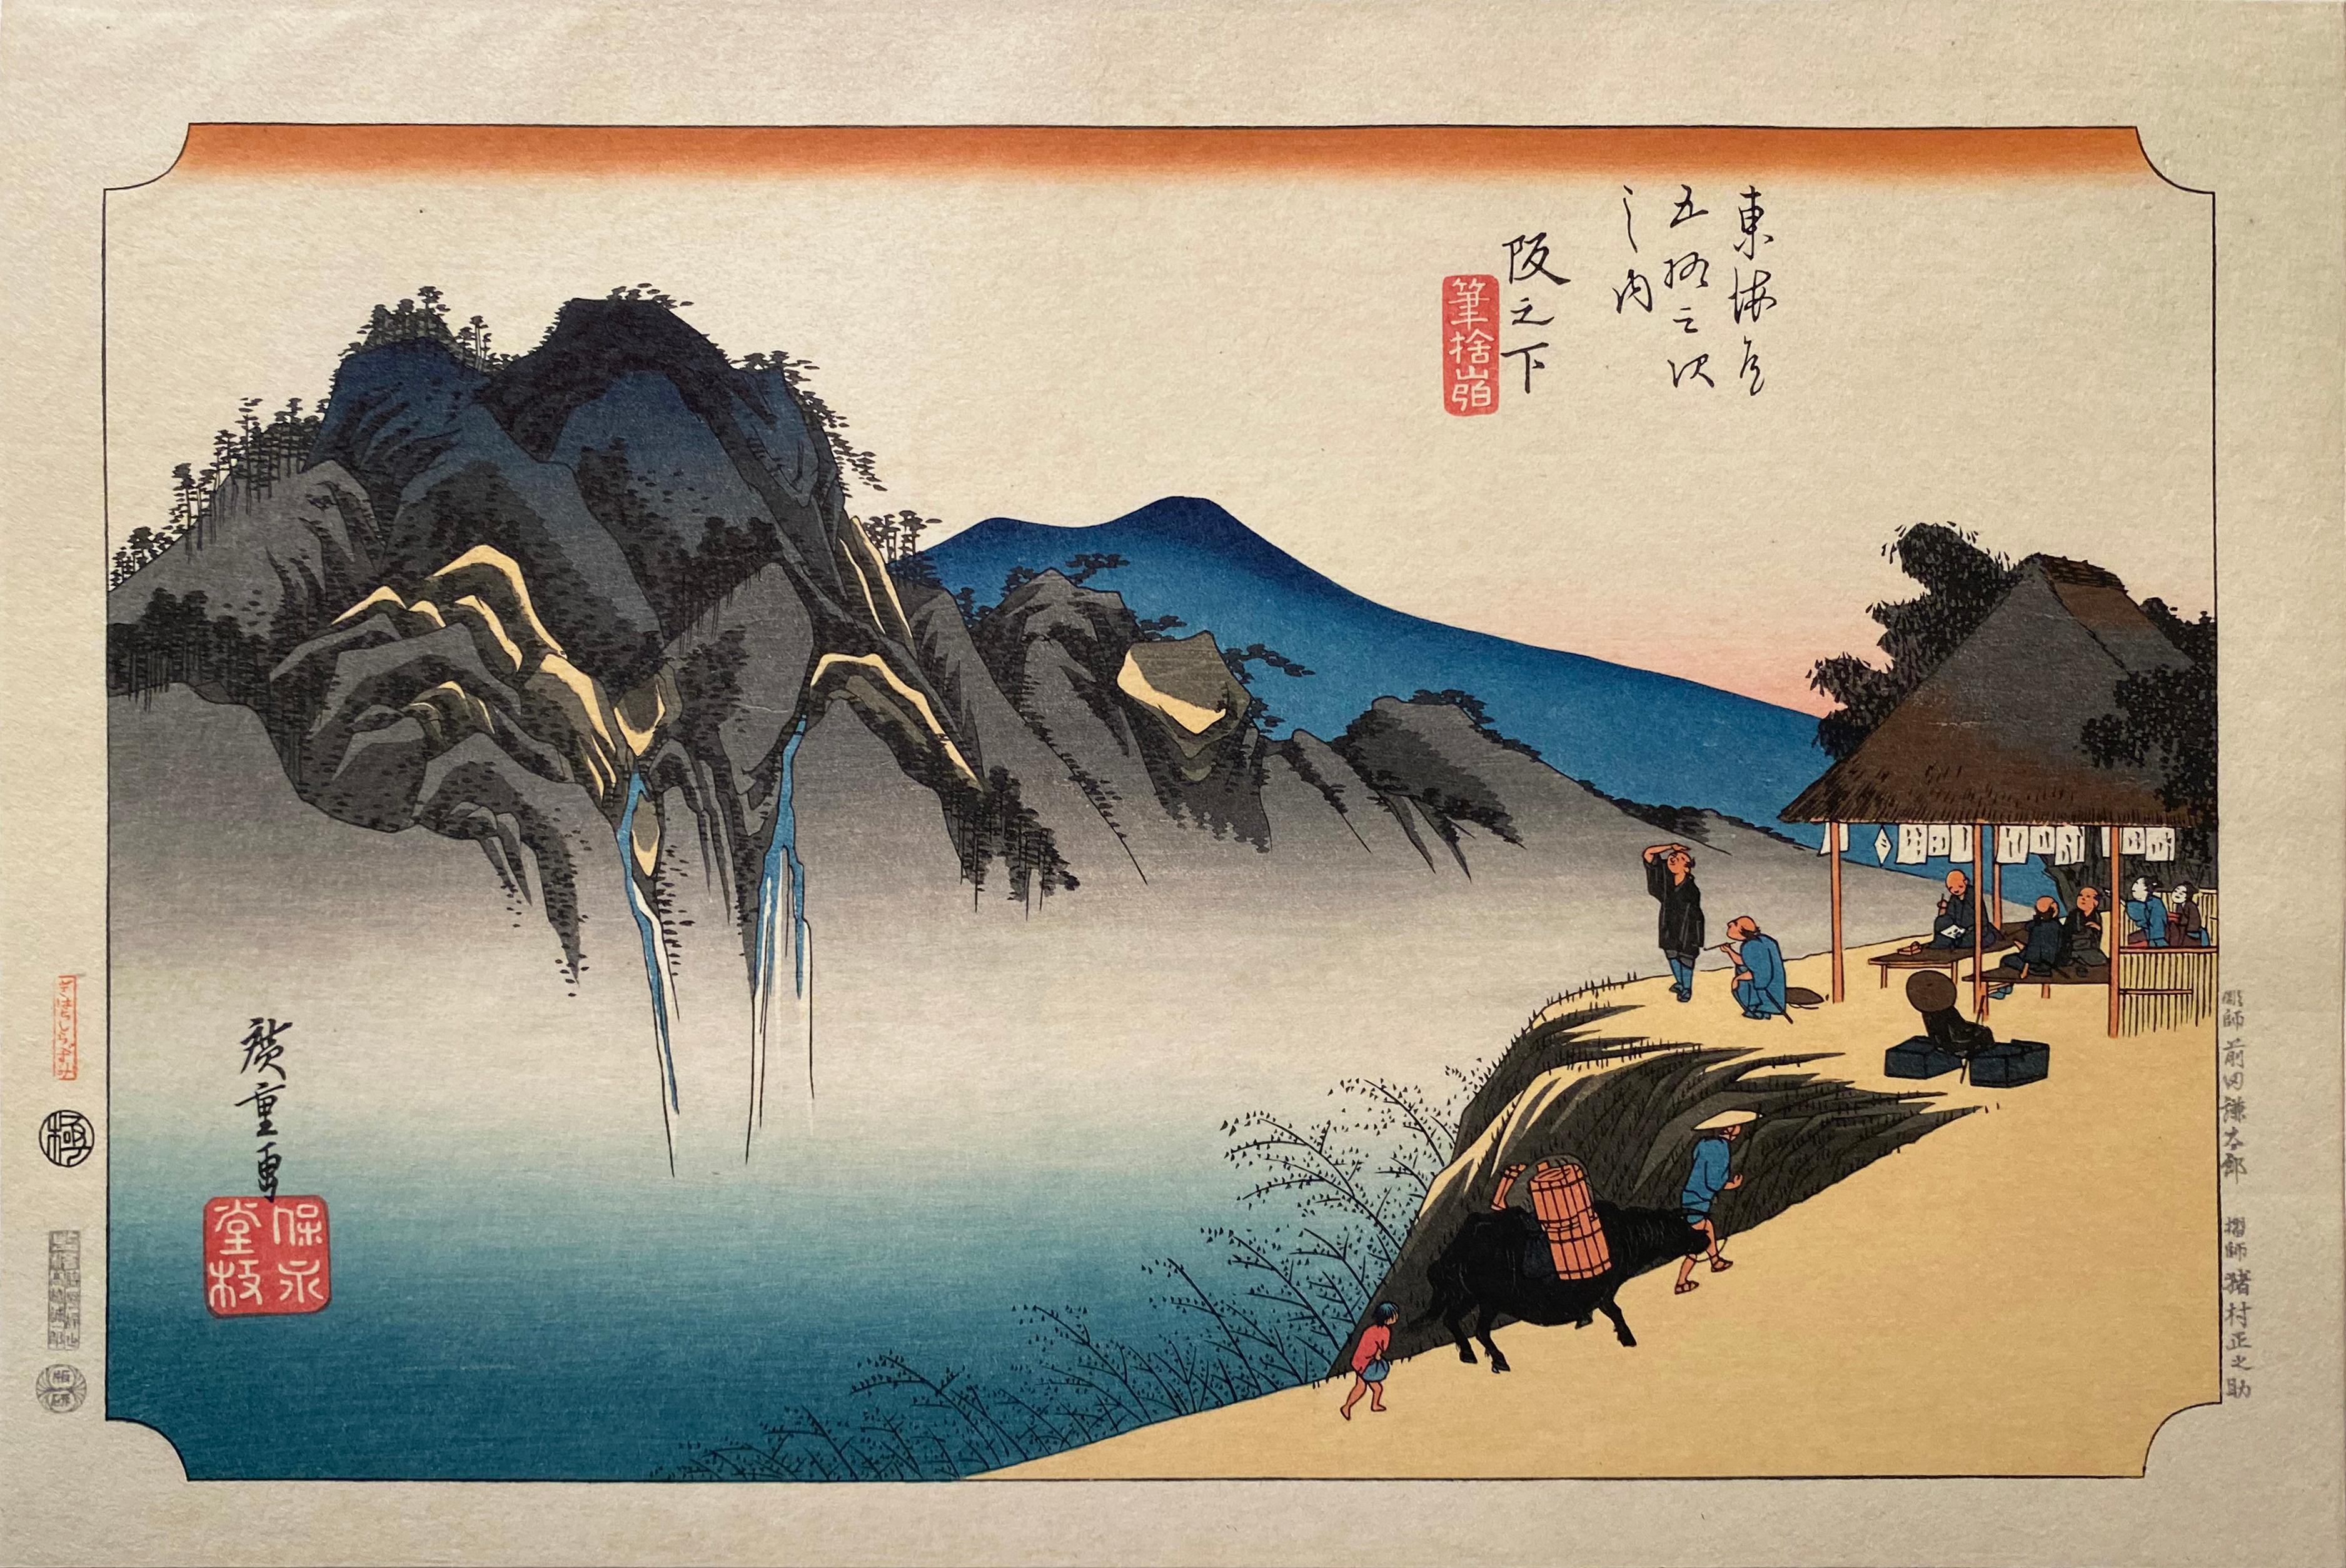 'Fudesute Mountain', After Utagawa Hiroshige 歌川廣重, Ukiyo-e Woodblock, Tokaido